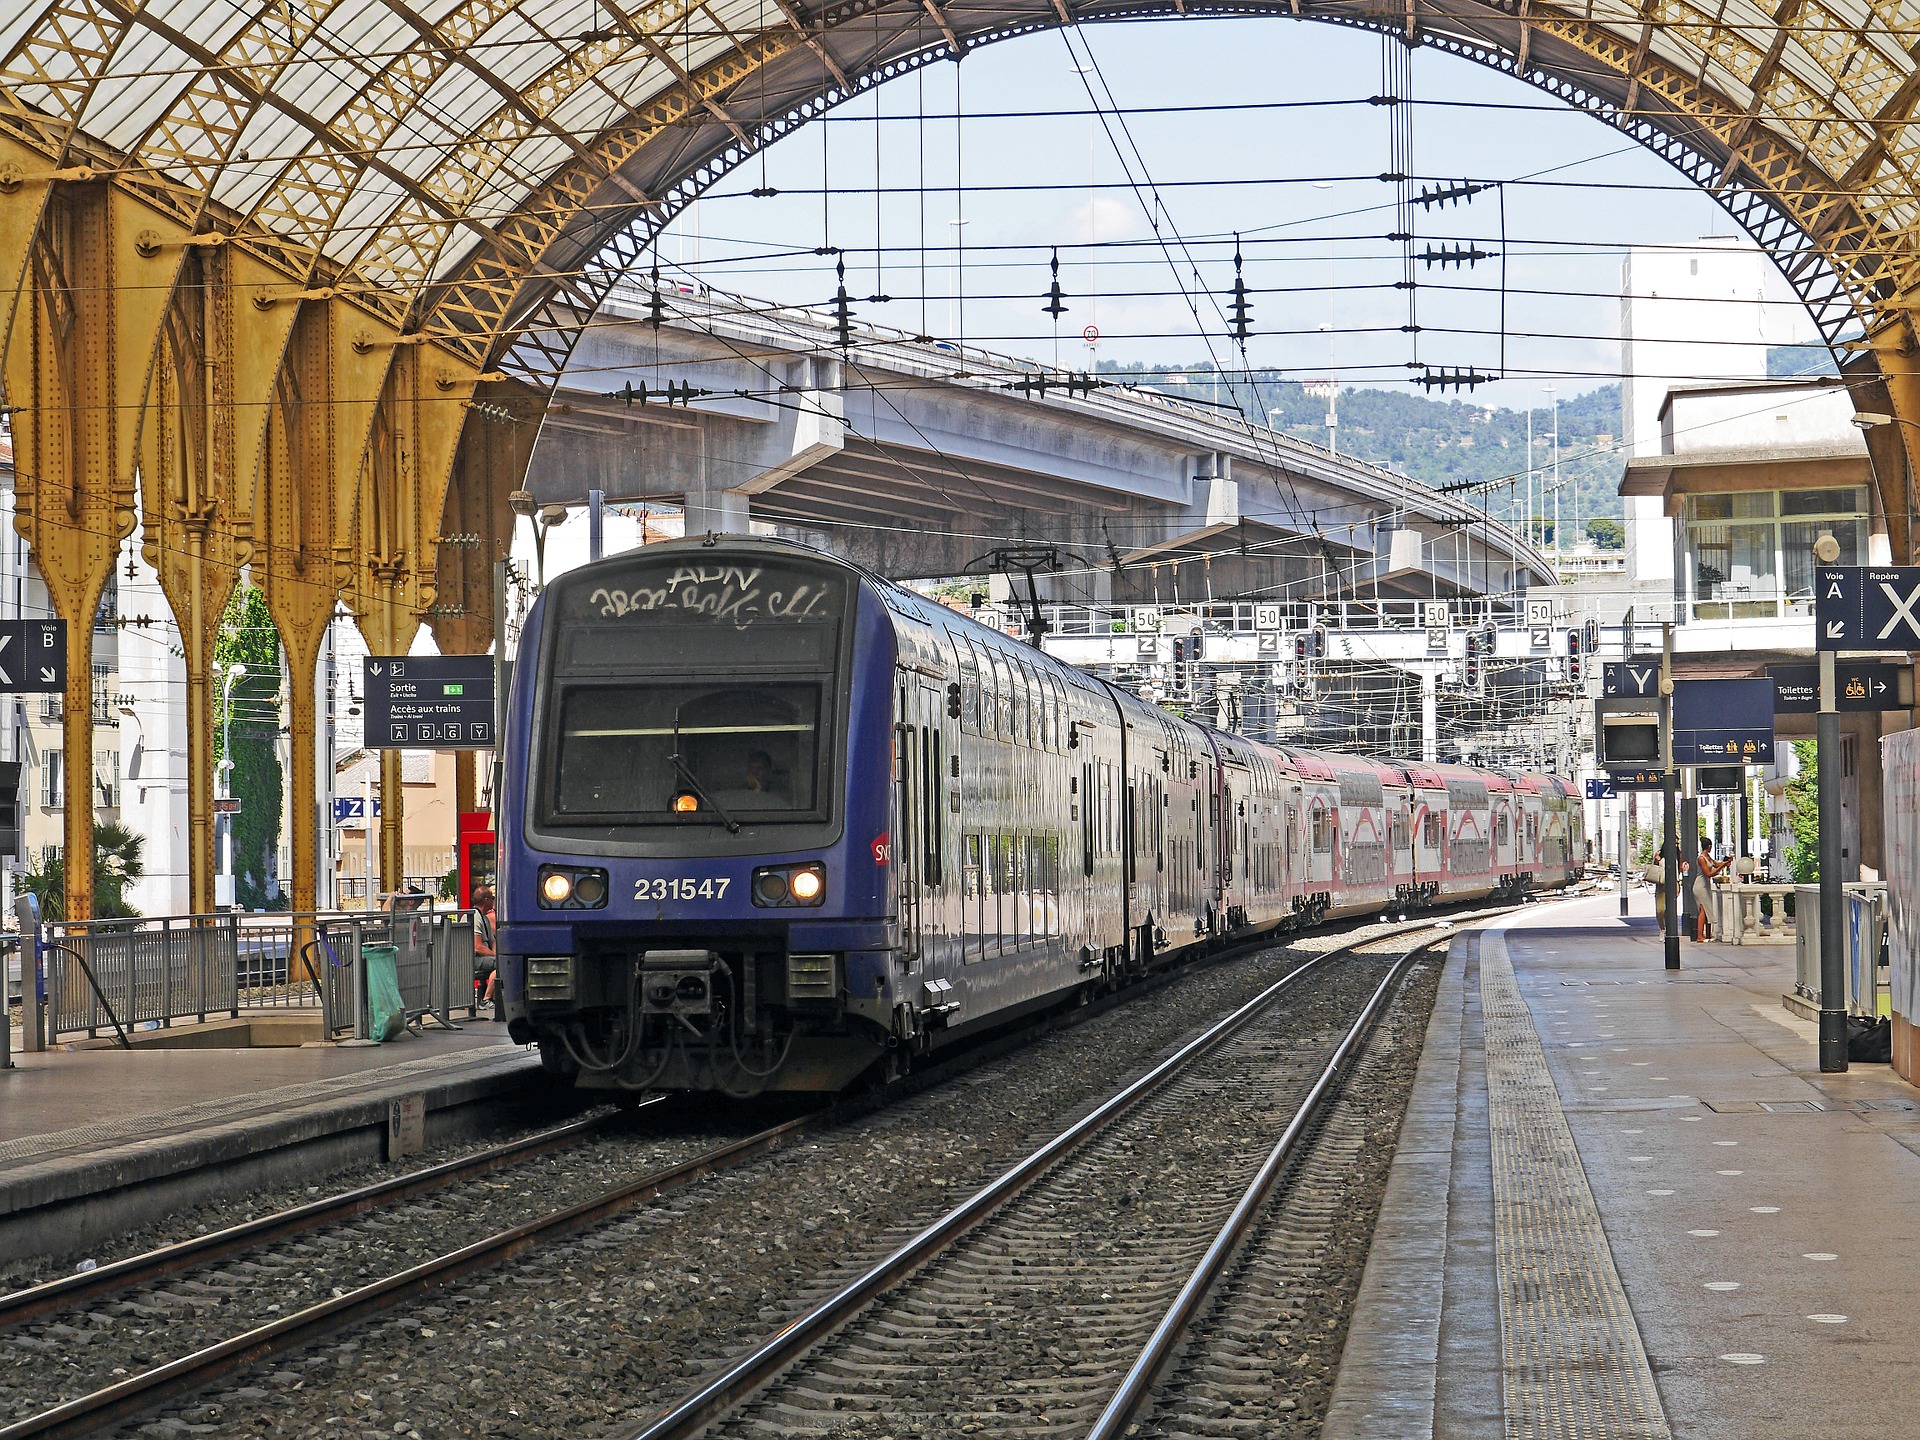 Un TER de la SNCF en gare de Nice. Normalement, tant que vous n'avez ni tandem, ni carriole / remorque, vous pouvez l'emprunter avec votre vélo non démonté (photo de hpgruesen - domaine public)